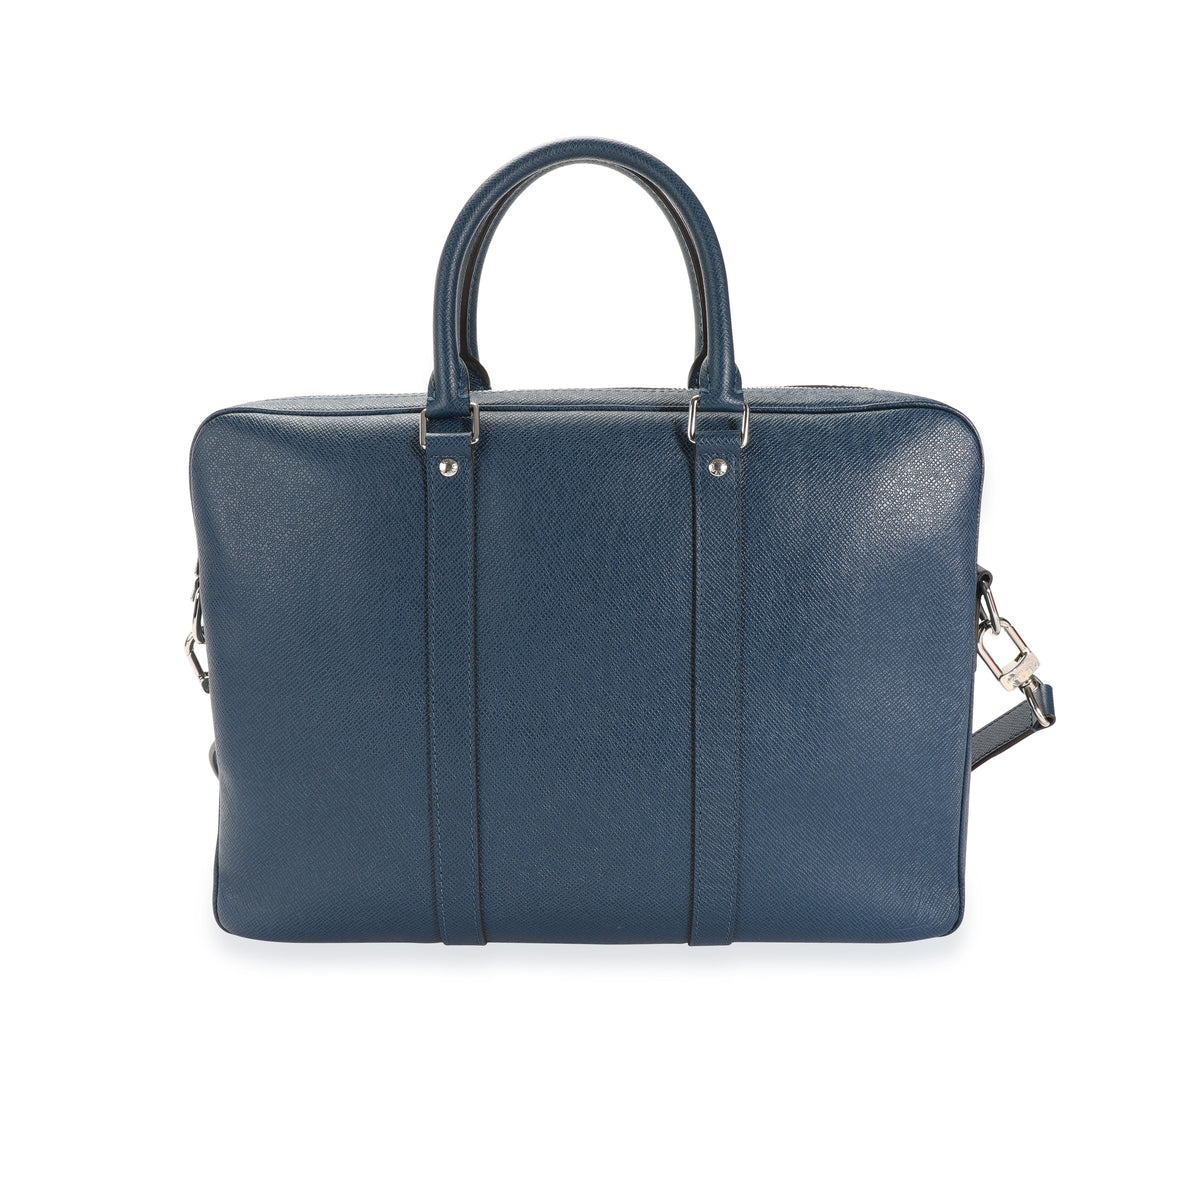 Porte documents voyage leather bag Louis Vuitton Multicolour in